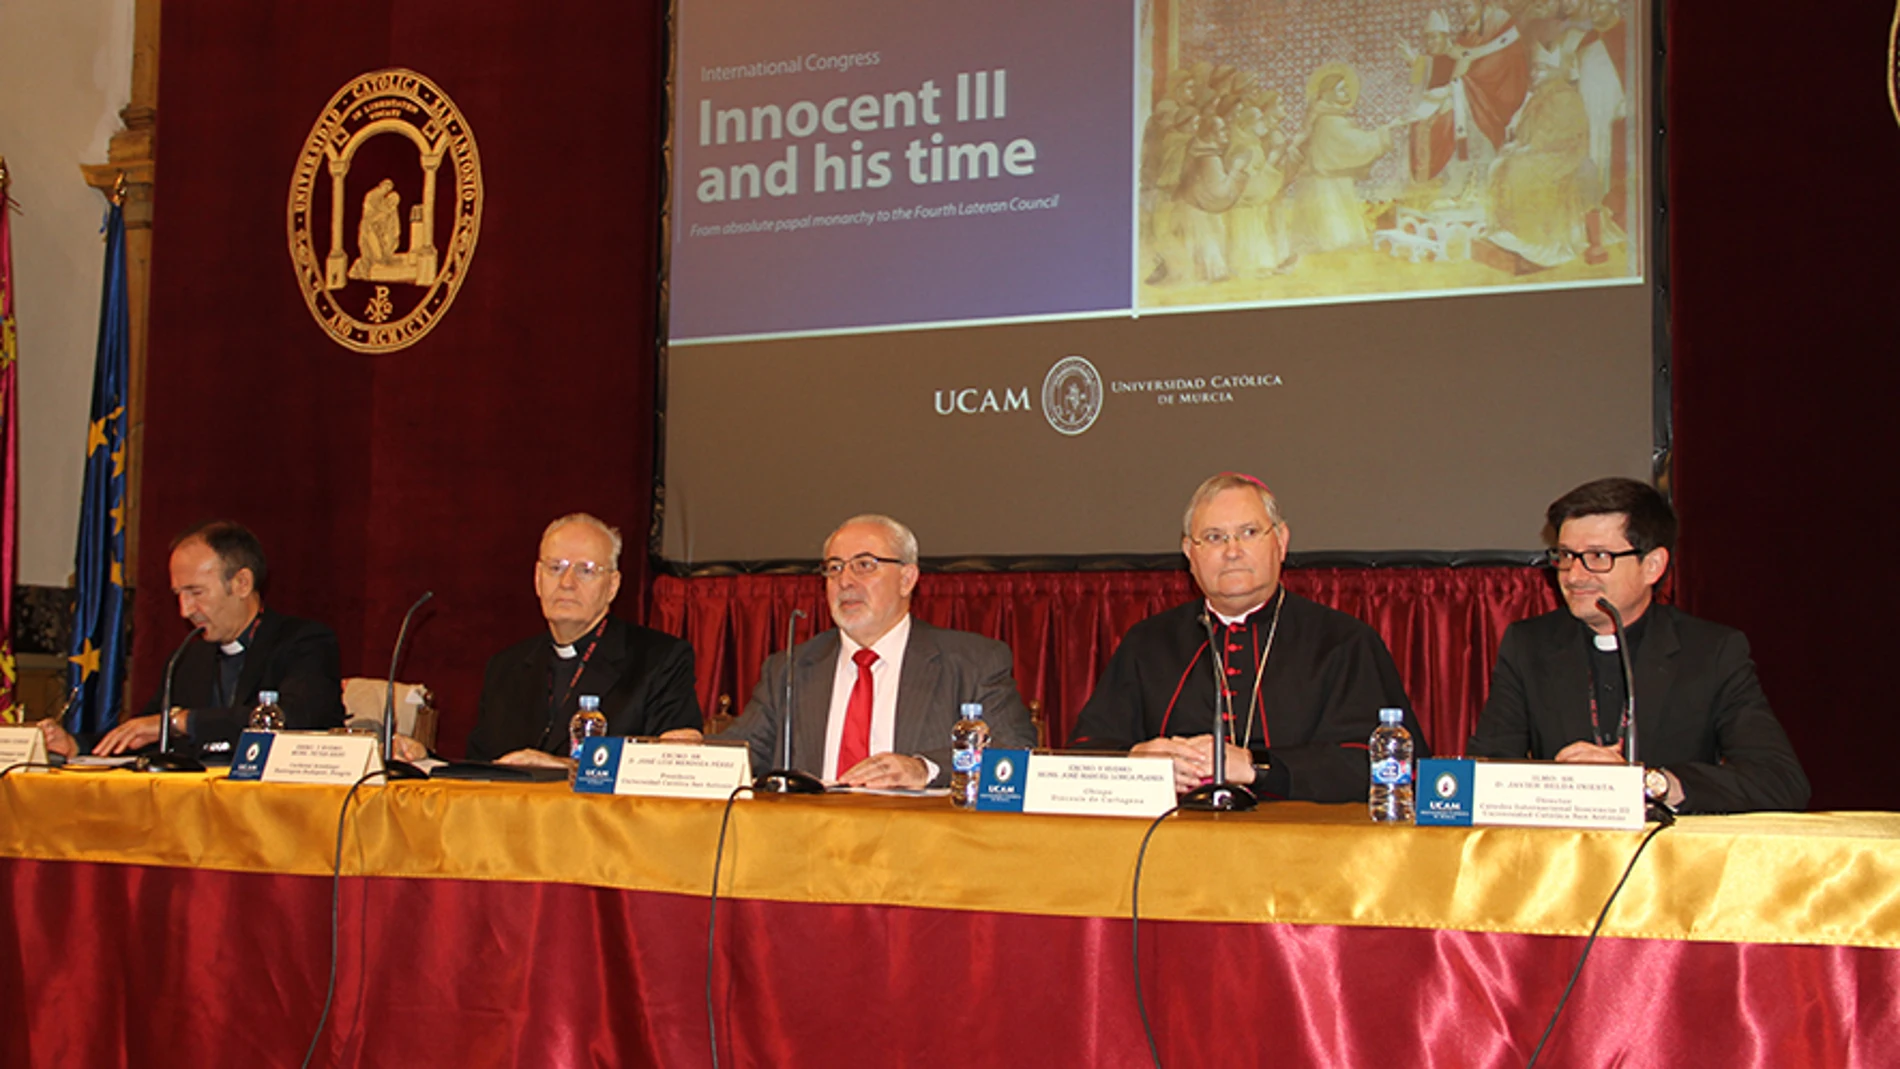 El cardenal Peter Erdö, en Murcia: “Hay una Iglesia abierta que ha ido madurando decisiones”